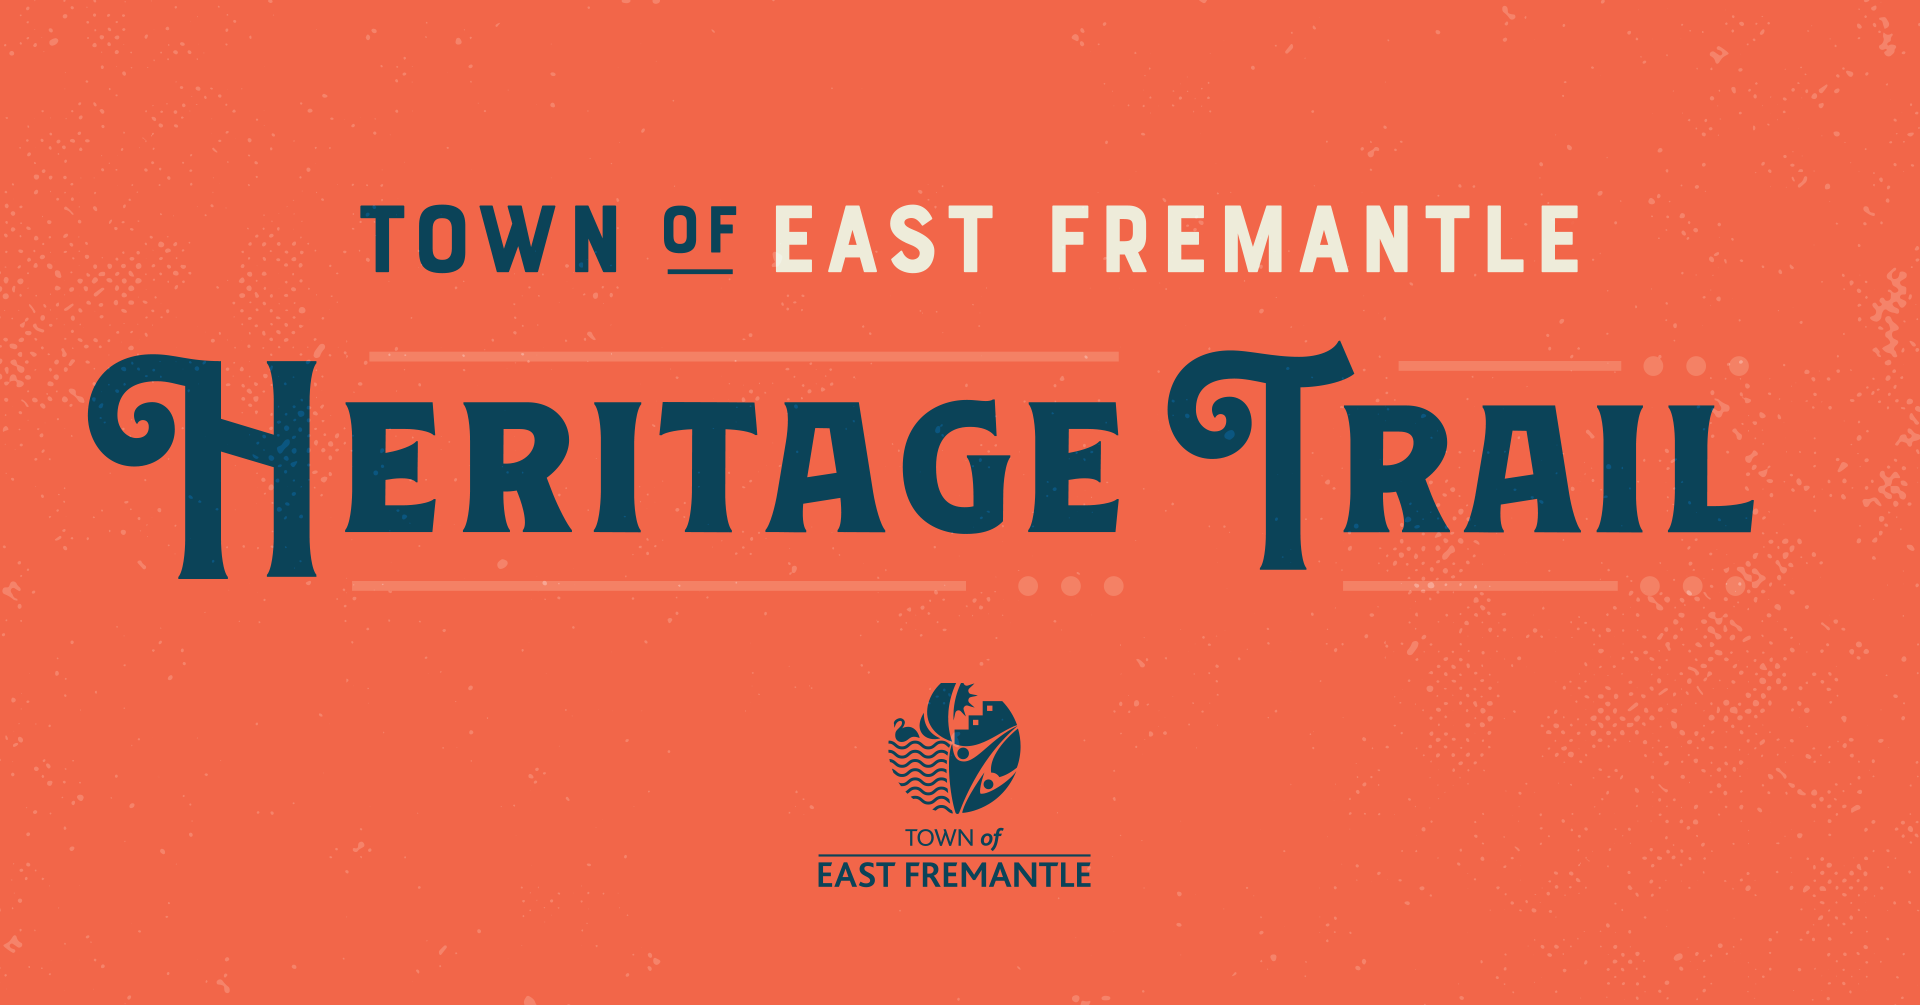 East Fremantle Heritage Trail